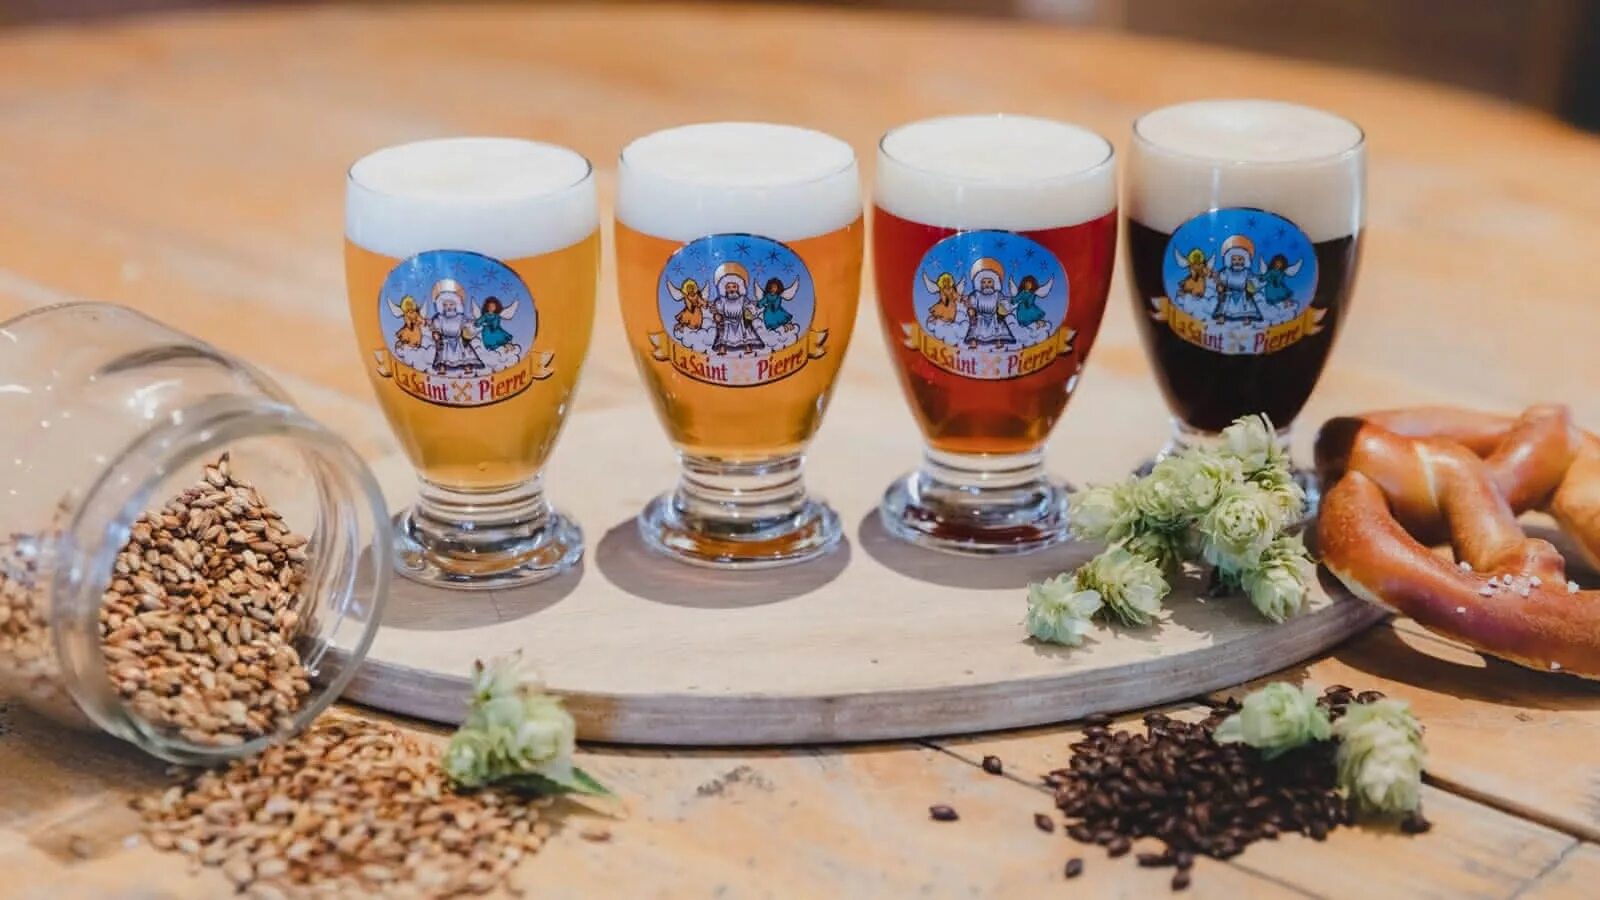 St pierre пиво. Saint Pierre пиво. Пиво St. Pierre пиво. Пиво Бельгия St Pierre. Пиво St Pierre blonde.